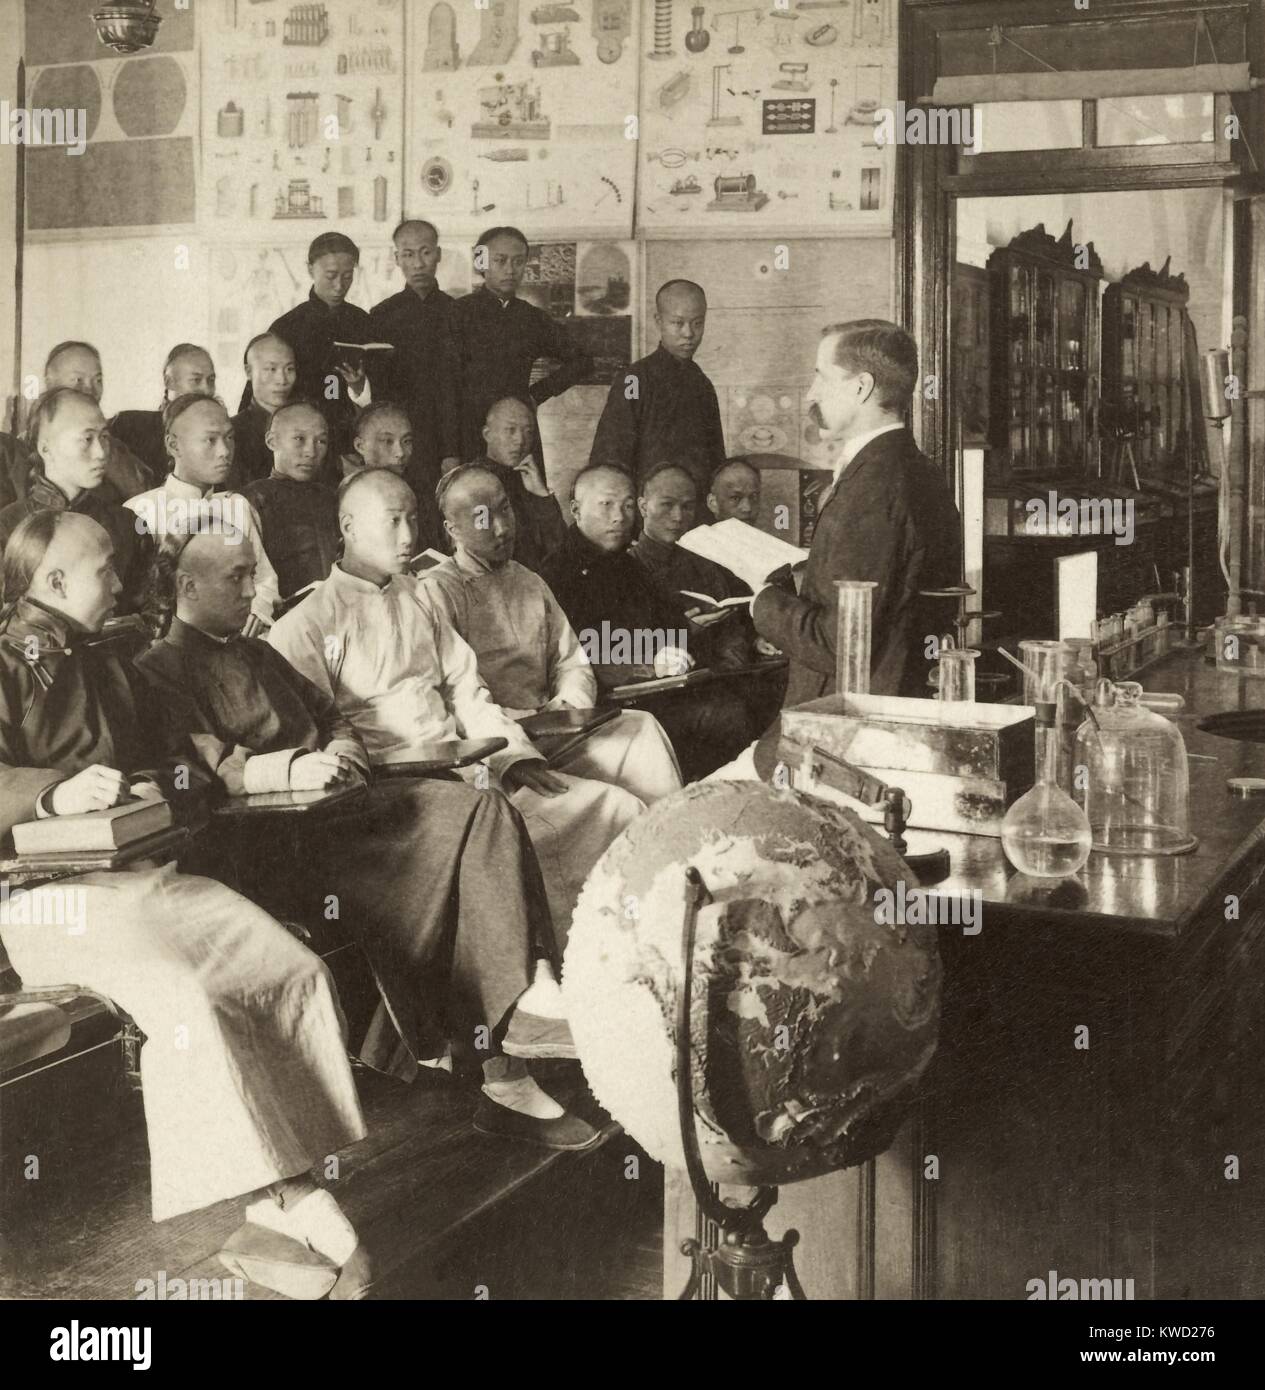 Klassenzimmer mit chinesischen Männer hören zu einem amerikanischen Dozentin in Shanghai, China, 1901. St. Johns amerikanische Hochschule, wurde im Jahre 1879 von amerikanischen Missionaren gegründet. Durch die Anfang des 20. Jahrhunderts, seine Kurse wurden in englischer Sprache unterrichtet und das Curriculum fokussiert auf Wissenschaft und Naturphilosophie (BSLOC 2017 20 2) Stockfoto